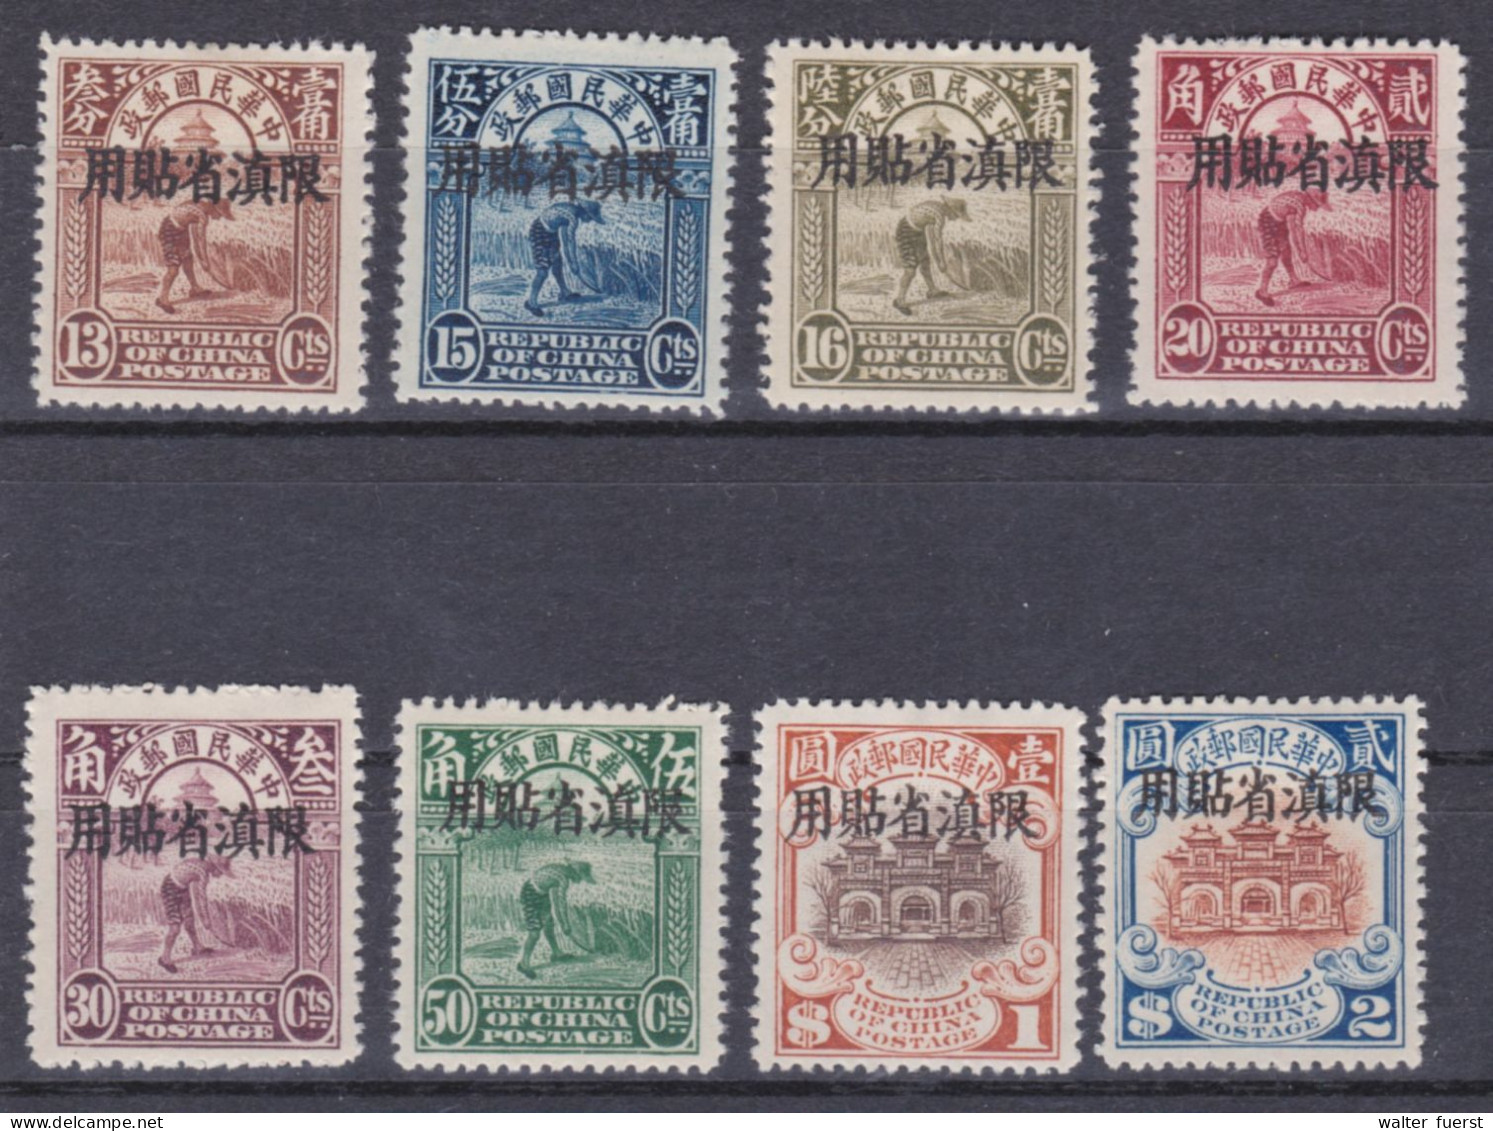 CHINA-YUNNAN 1926, 13 C. - 2 $, mint hinged